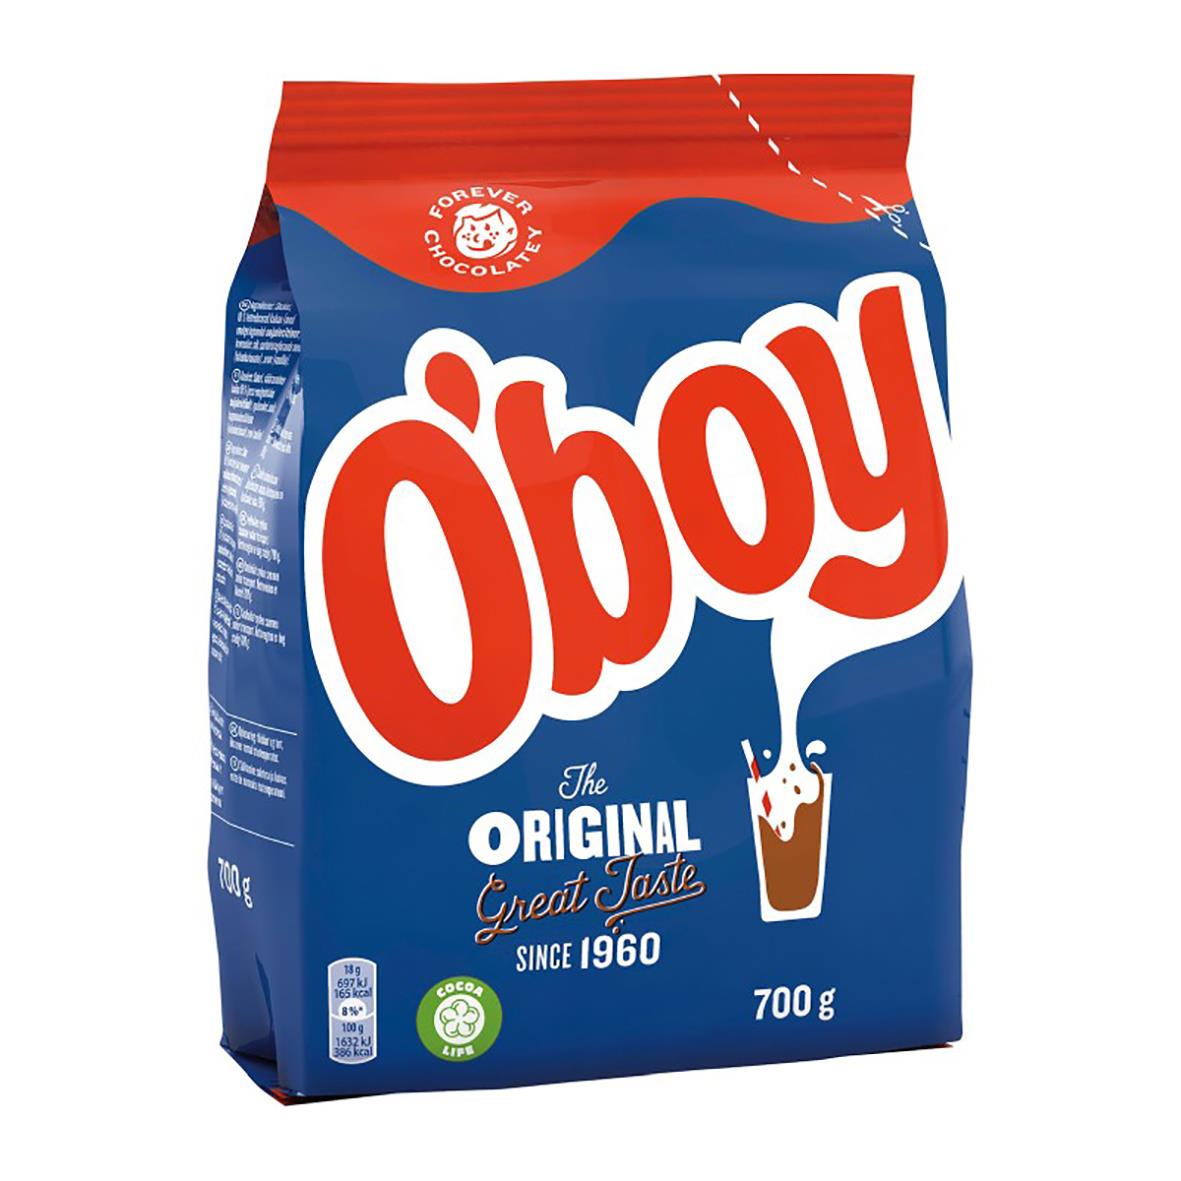 Chokladdryck Oboy 700g 60110033